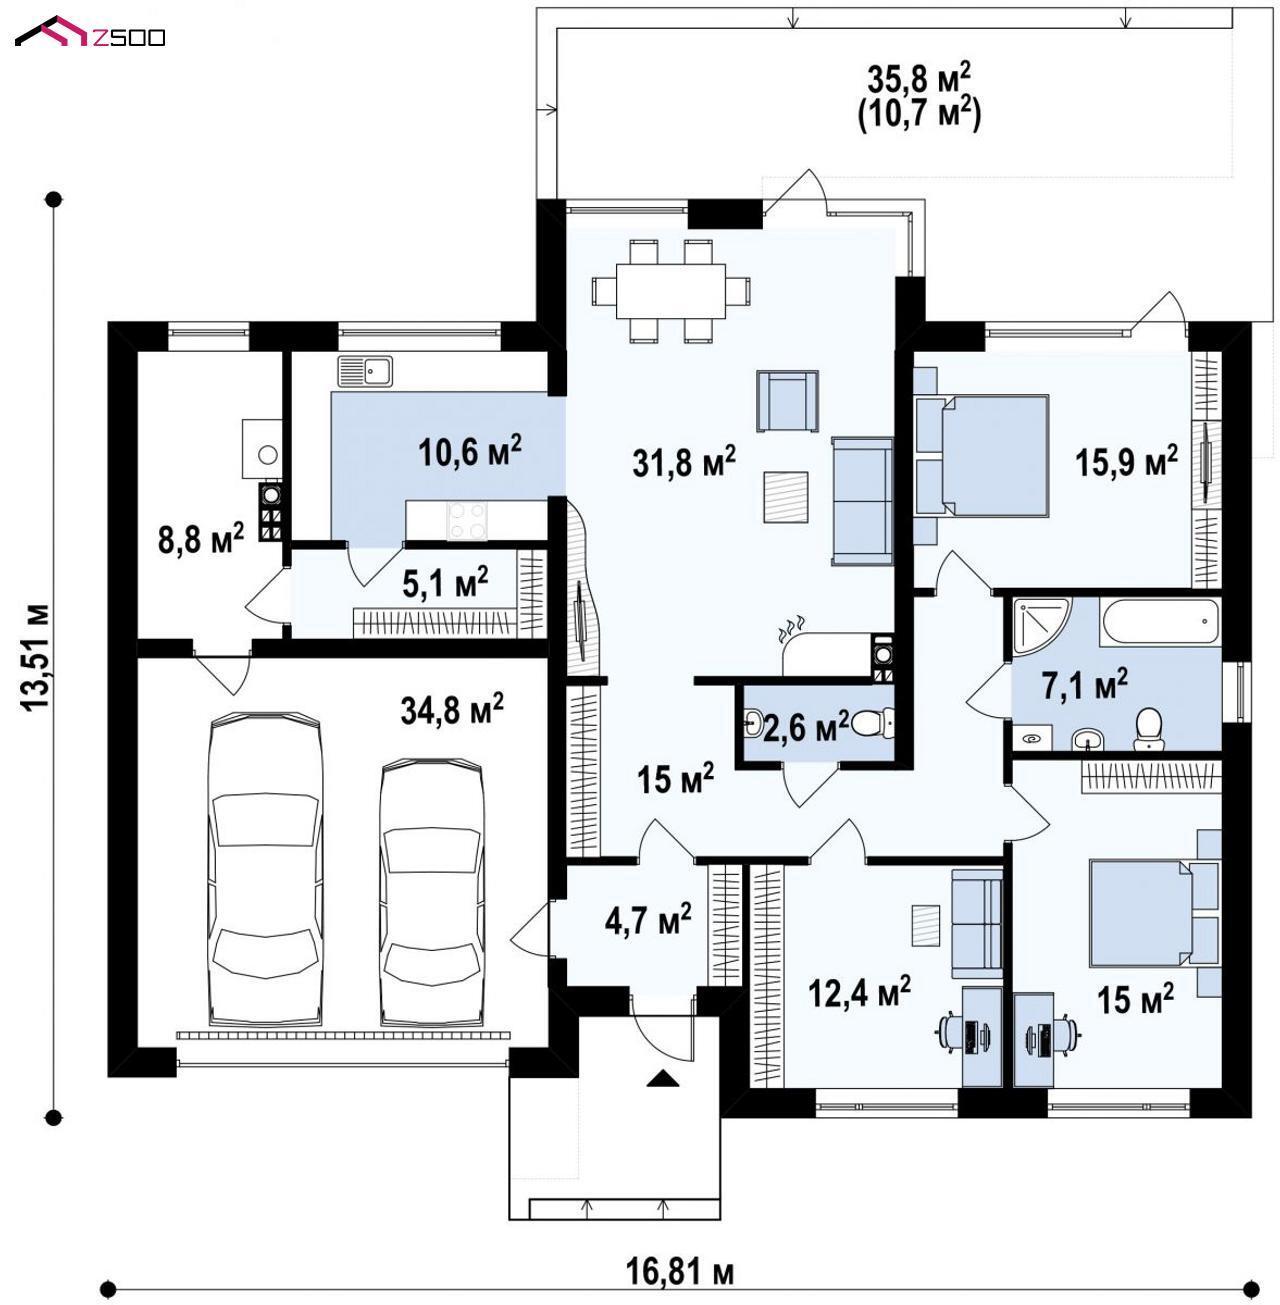 Проект дома Zx104 - план-схема 1